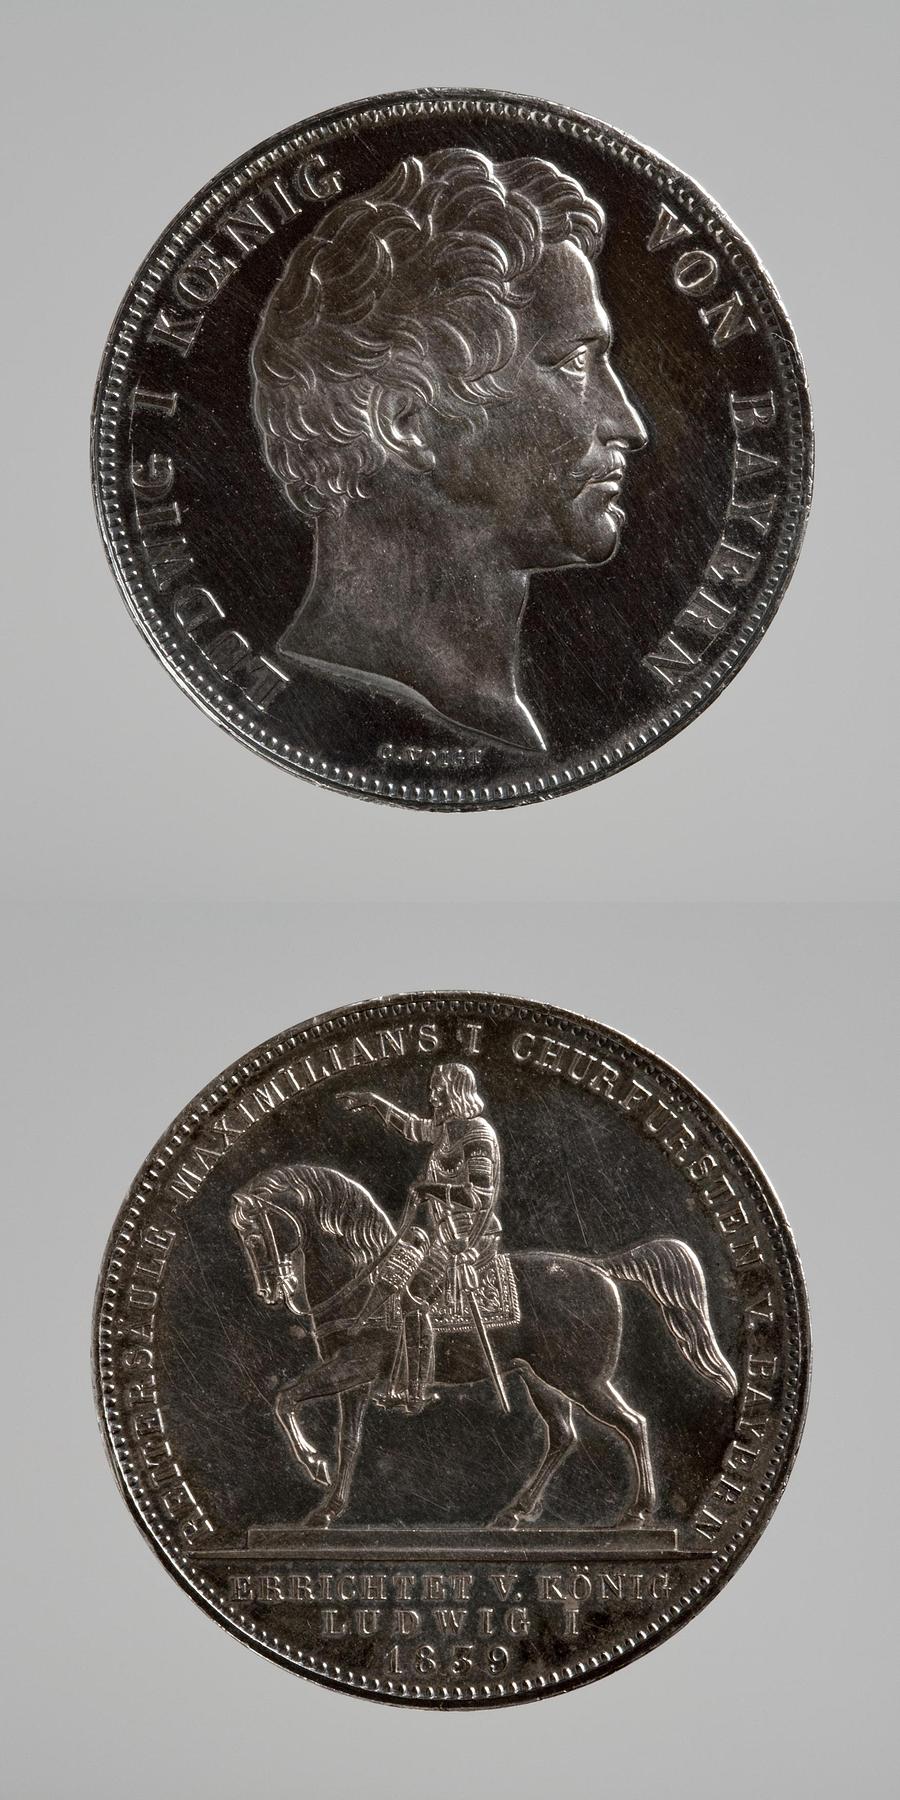 Medaljens forside: Kong Ludwig 1. af Bayern. Medaljens bagside: Maximilian 1., F22